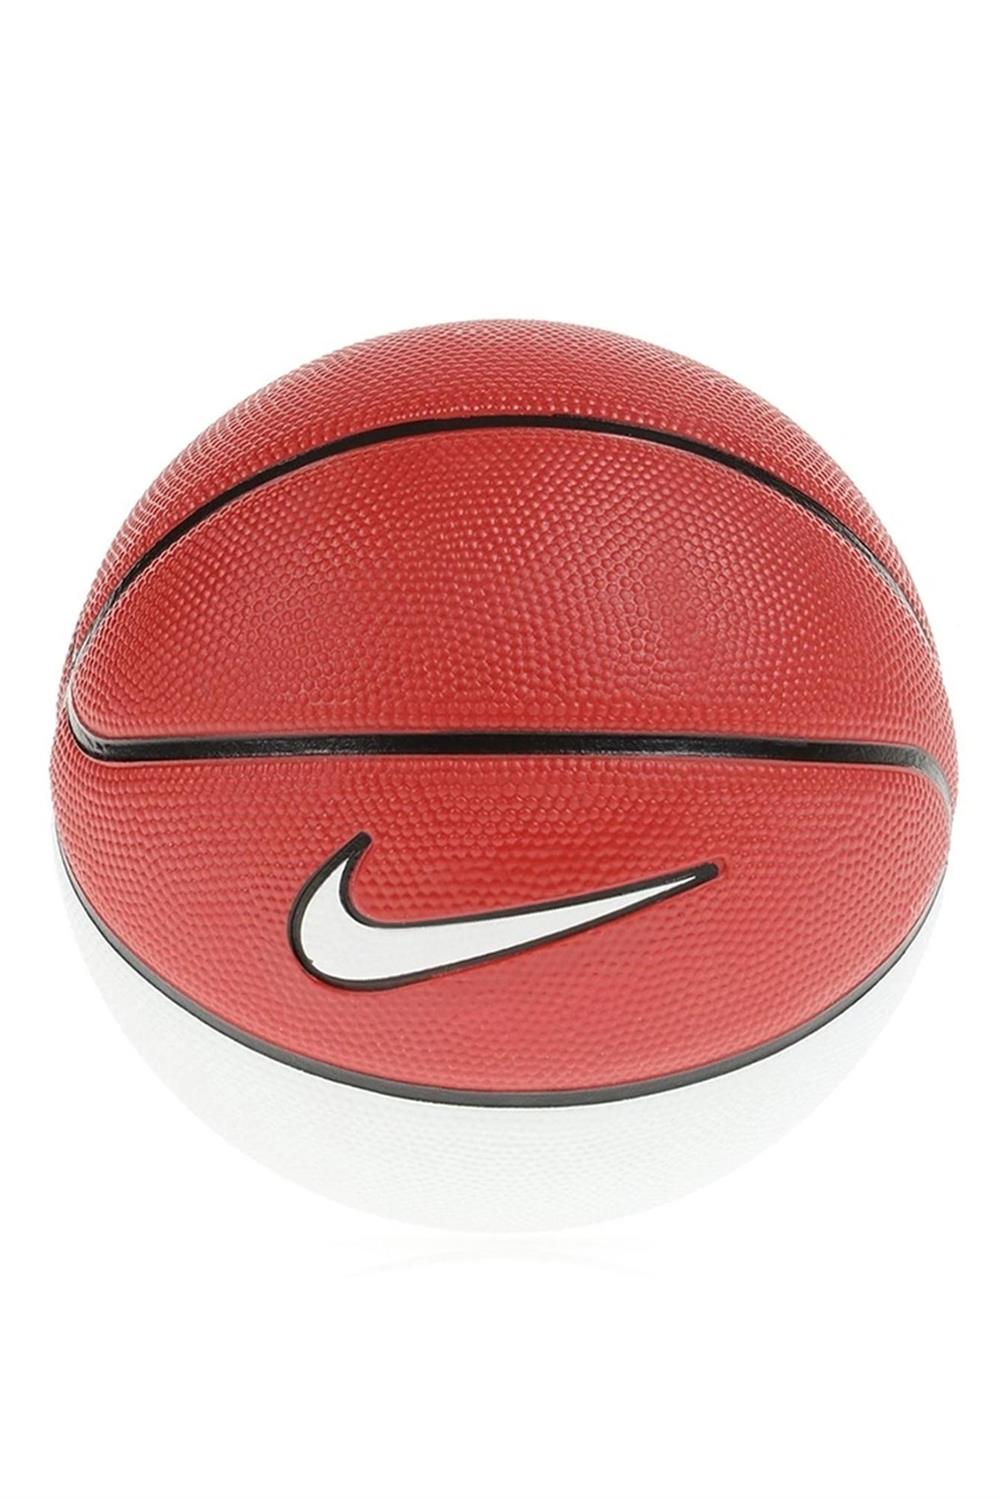 Nike Skılls Basketbol Topu N.000.1285.626.03 | Sporborsasi.com